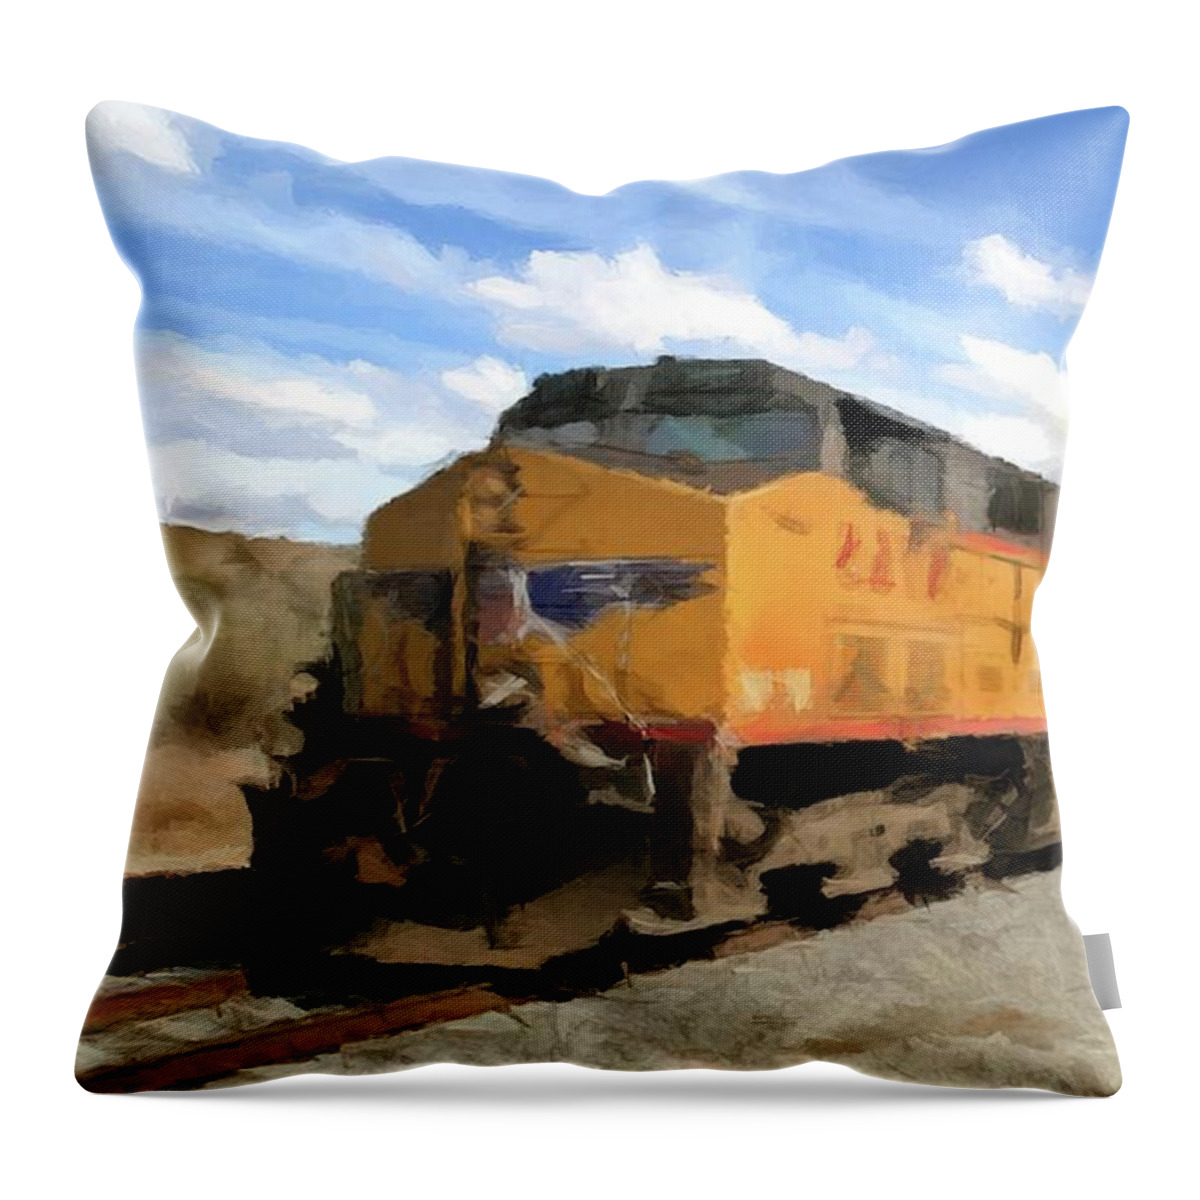 Train Throw Pillow featuring the photograph Prairie Train Ride by David Dehner